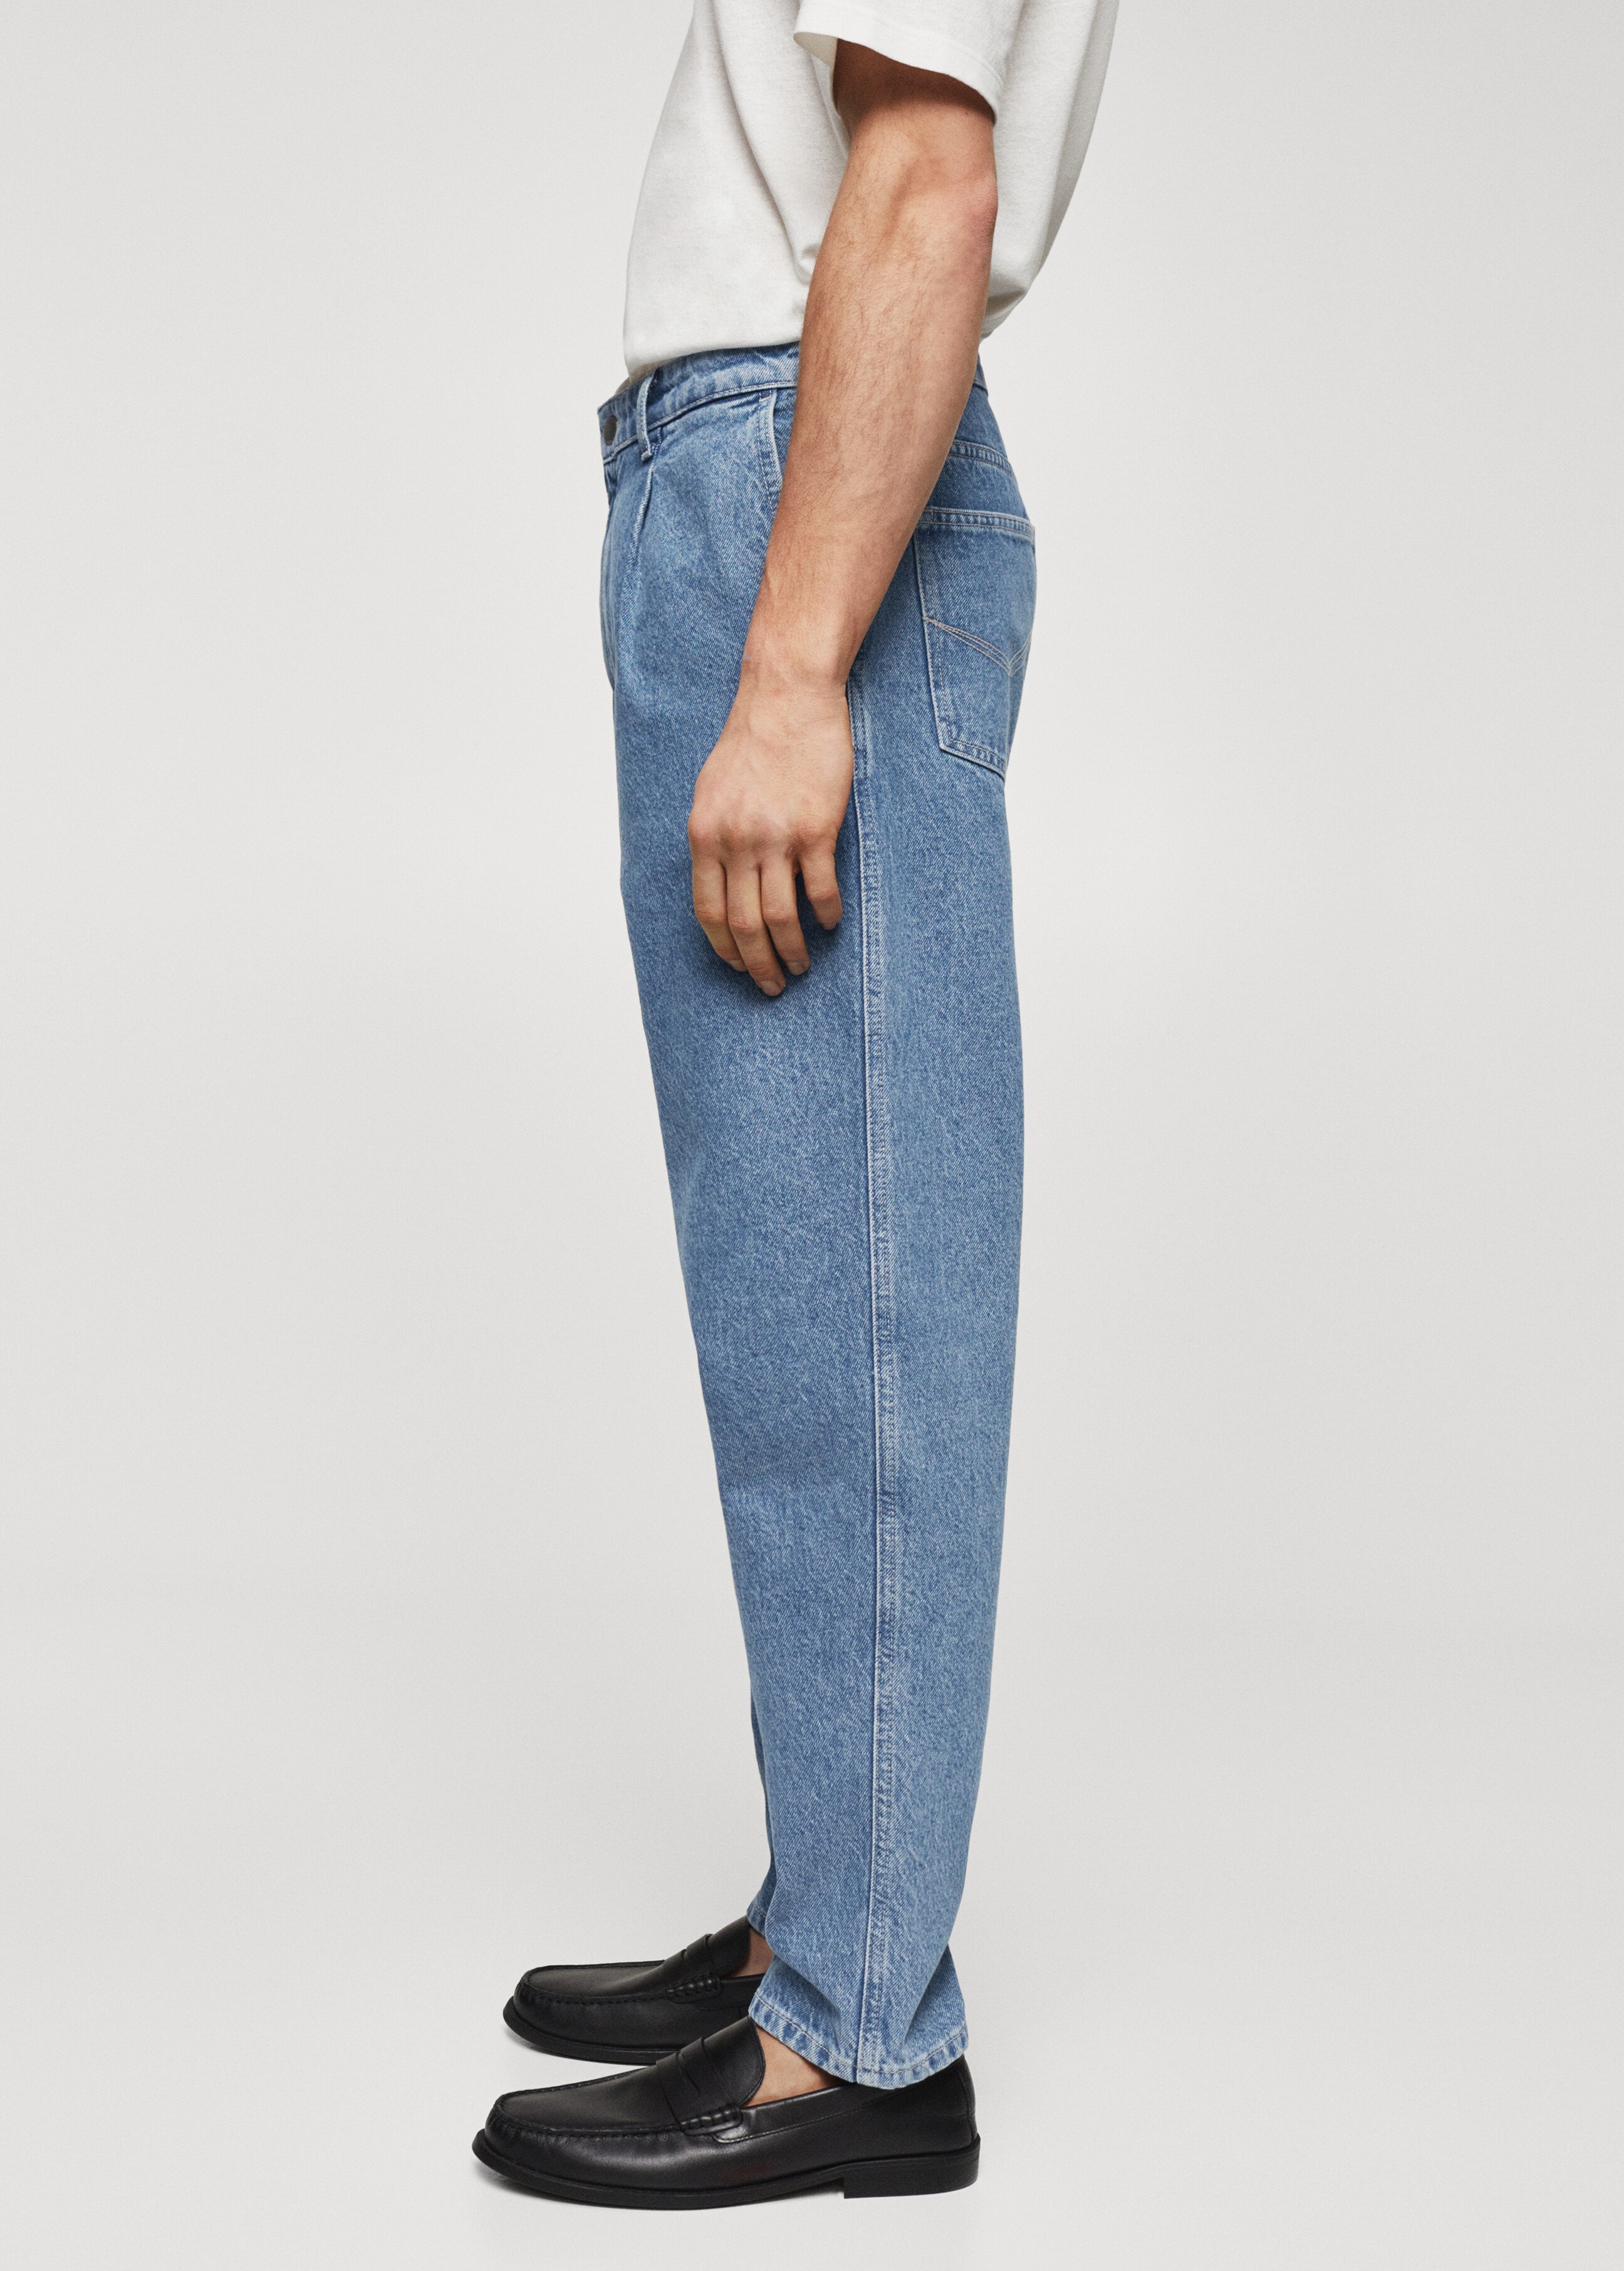 Jeans slouchy pinzas  - Detalle del artículo 4